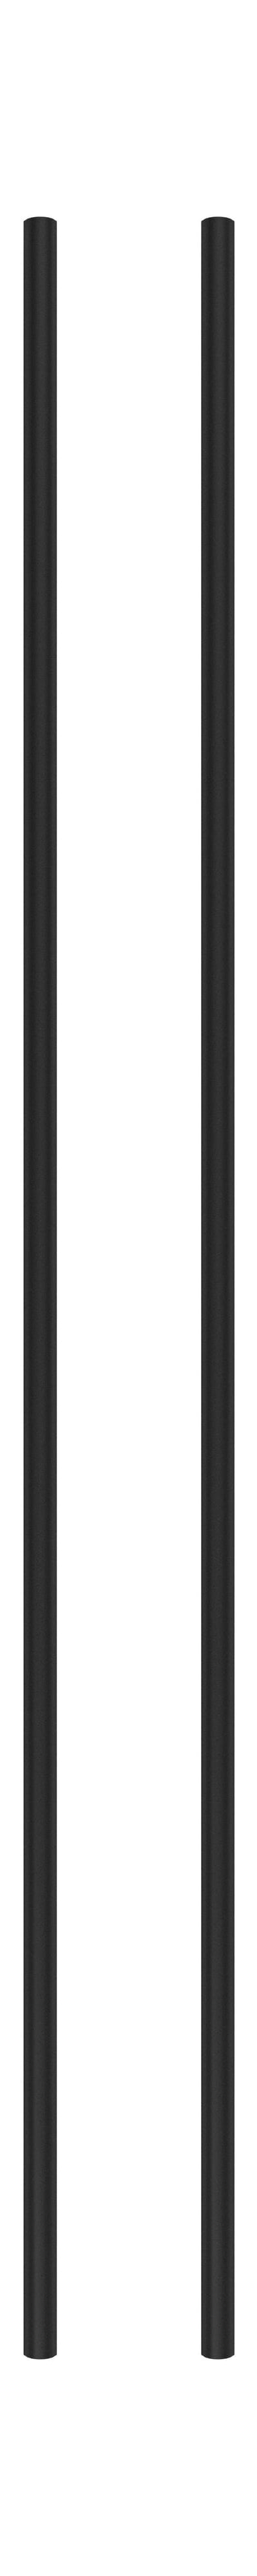 Moebe Spling -systeem/muurrekken been 115 cm zwart, set van 2